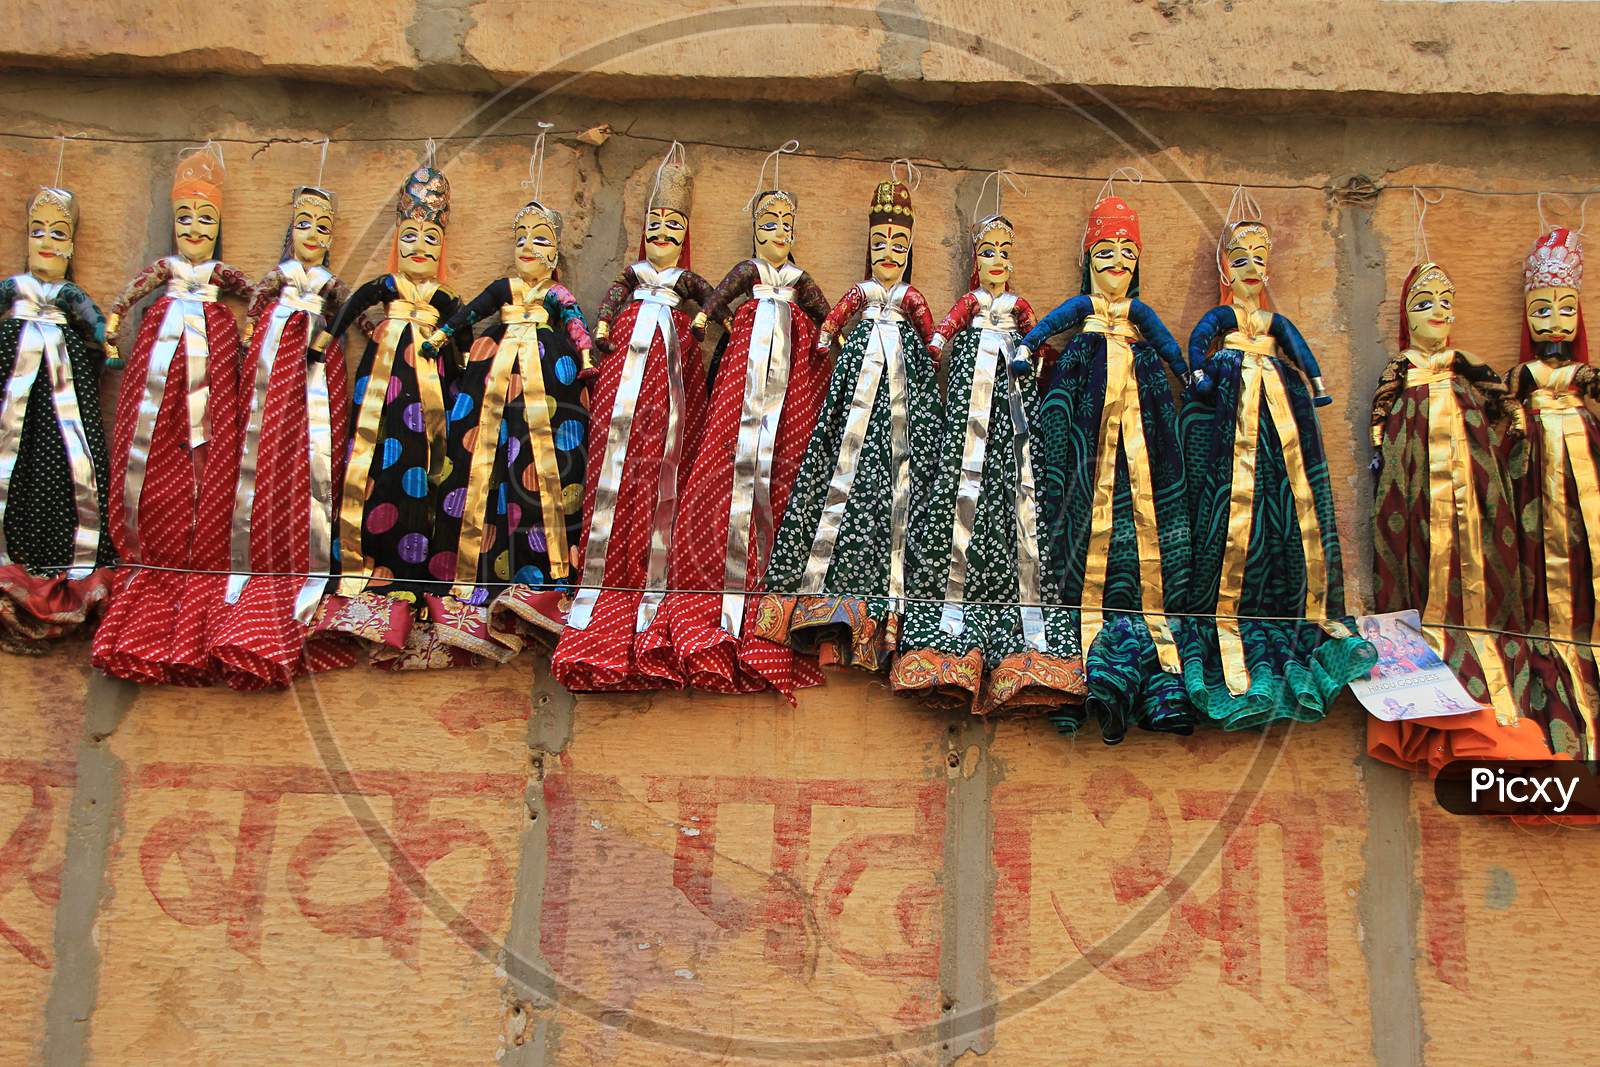 Rajasthani Dolls On Display